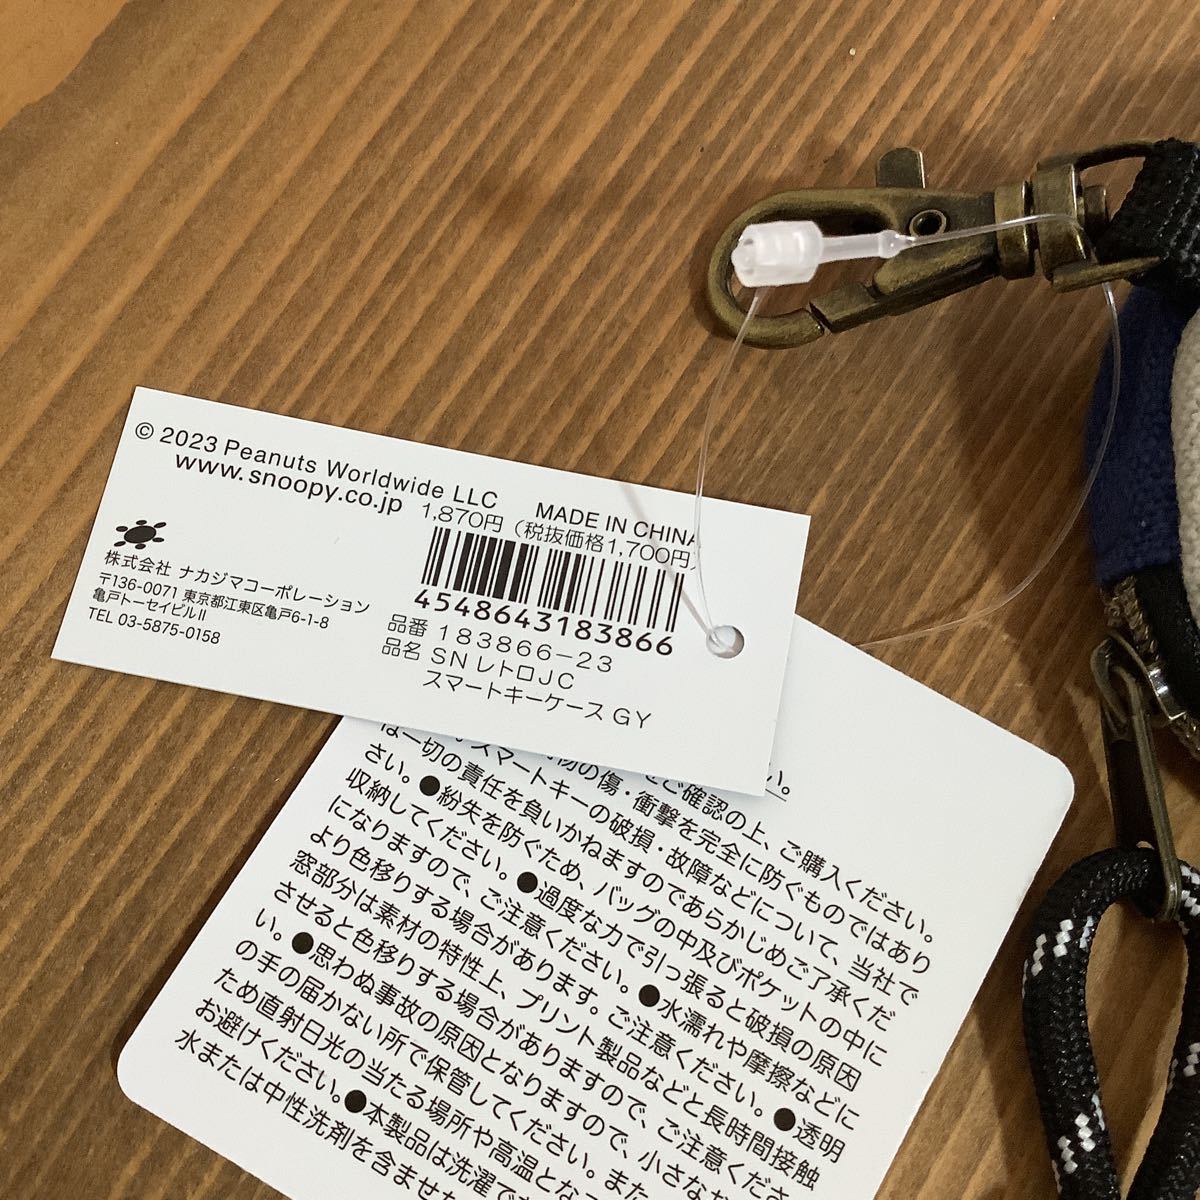  Snoopy "умный" ключ кейс брелок для ключа чехол для ключей ключ "умный" ключ стоимость доставки 140 иен новый товар шутки -ru